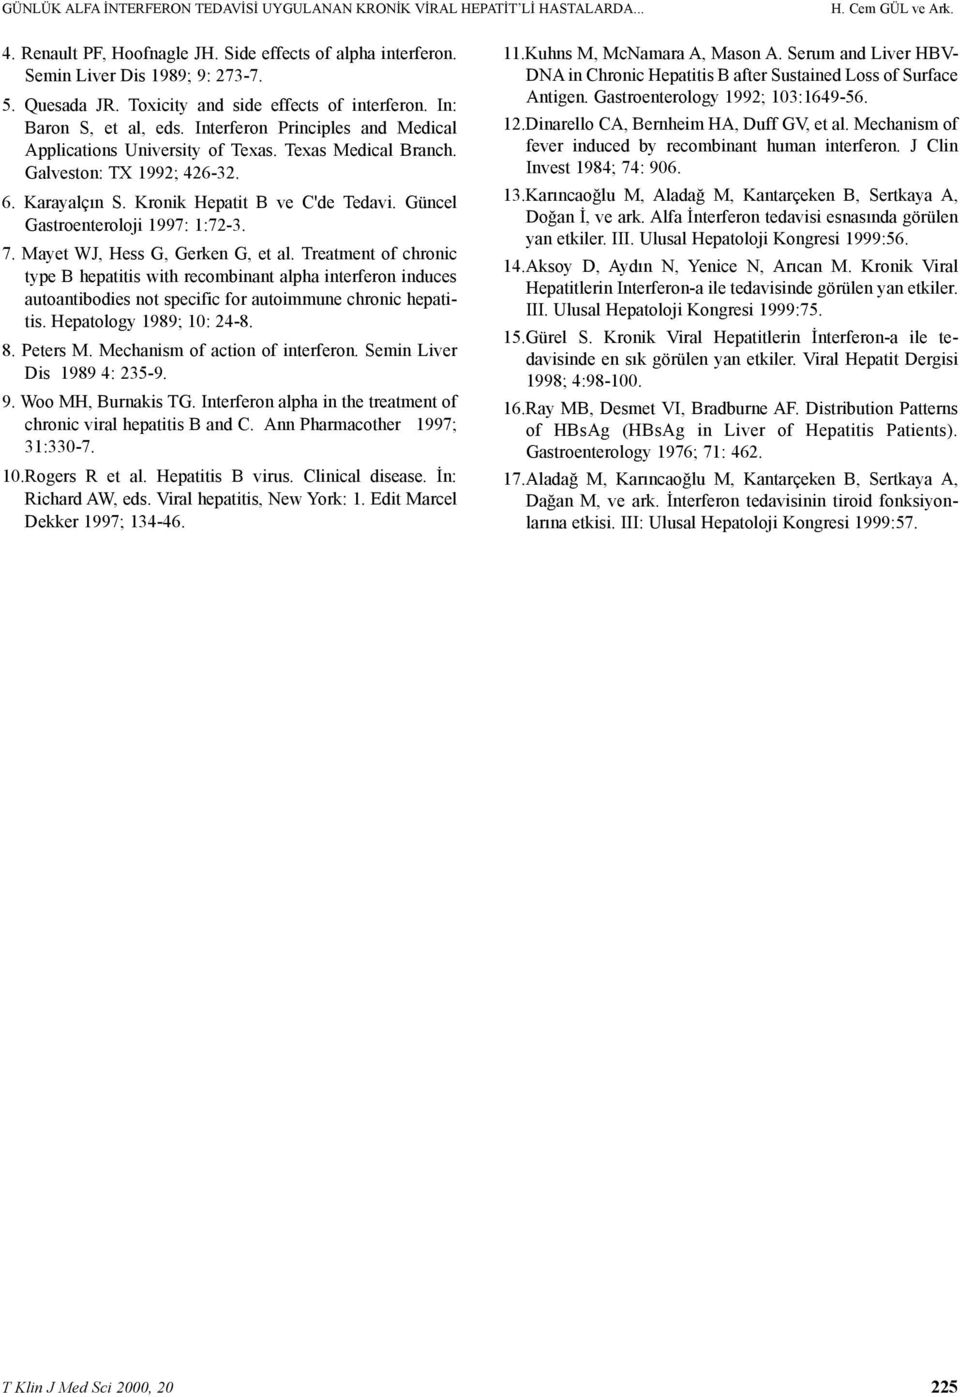 Karayalçýn S. Kronik Hepatit B ve C'de Tedavi. Güncel Gastroenteroloji 1997: 1:72-3. 7. Mayet WJ, Hess G, Gerken G, et al.